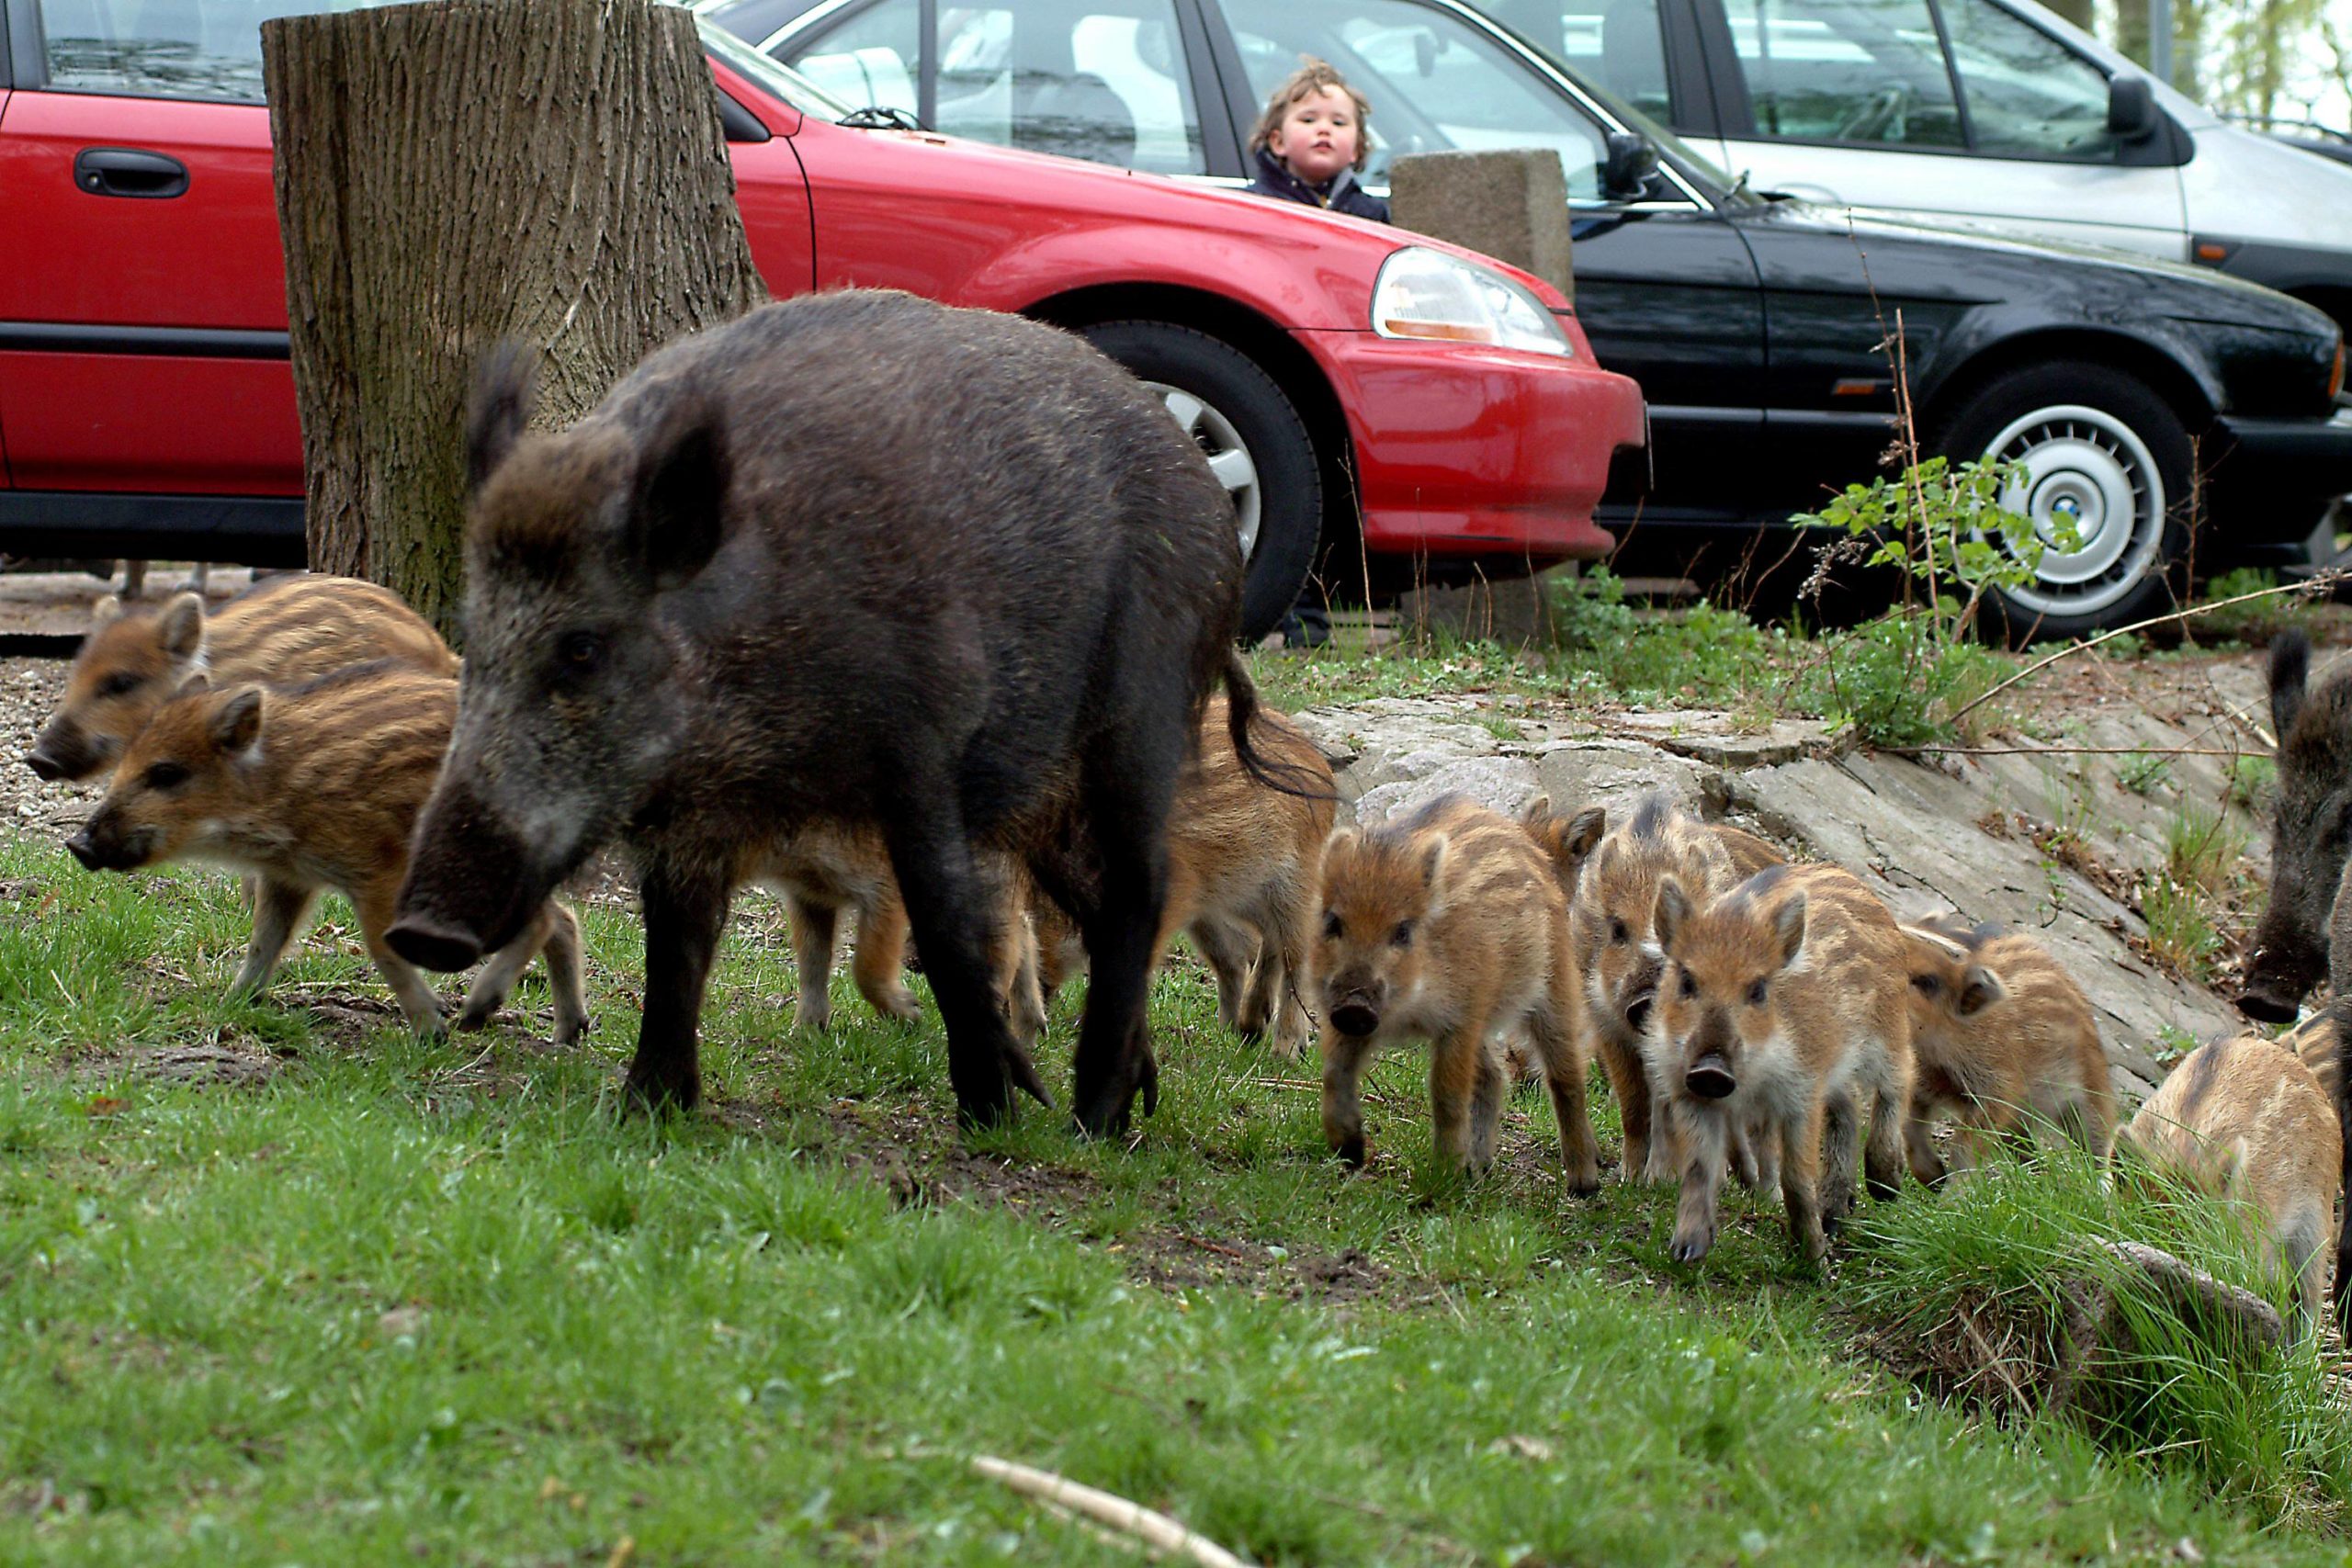 Wildschweine in Berlin: Wildschwein-Bache mit Nachwuchs an einem Parkplatz. Foto: Imago/Petra Schneider